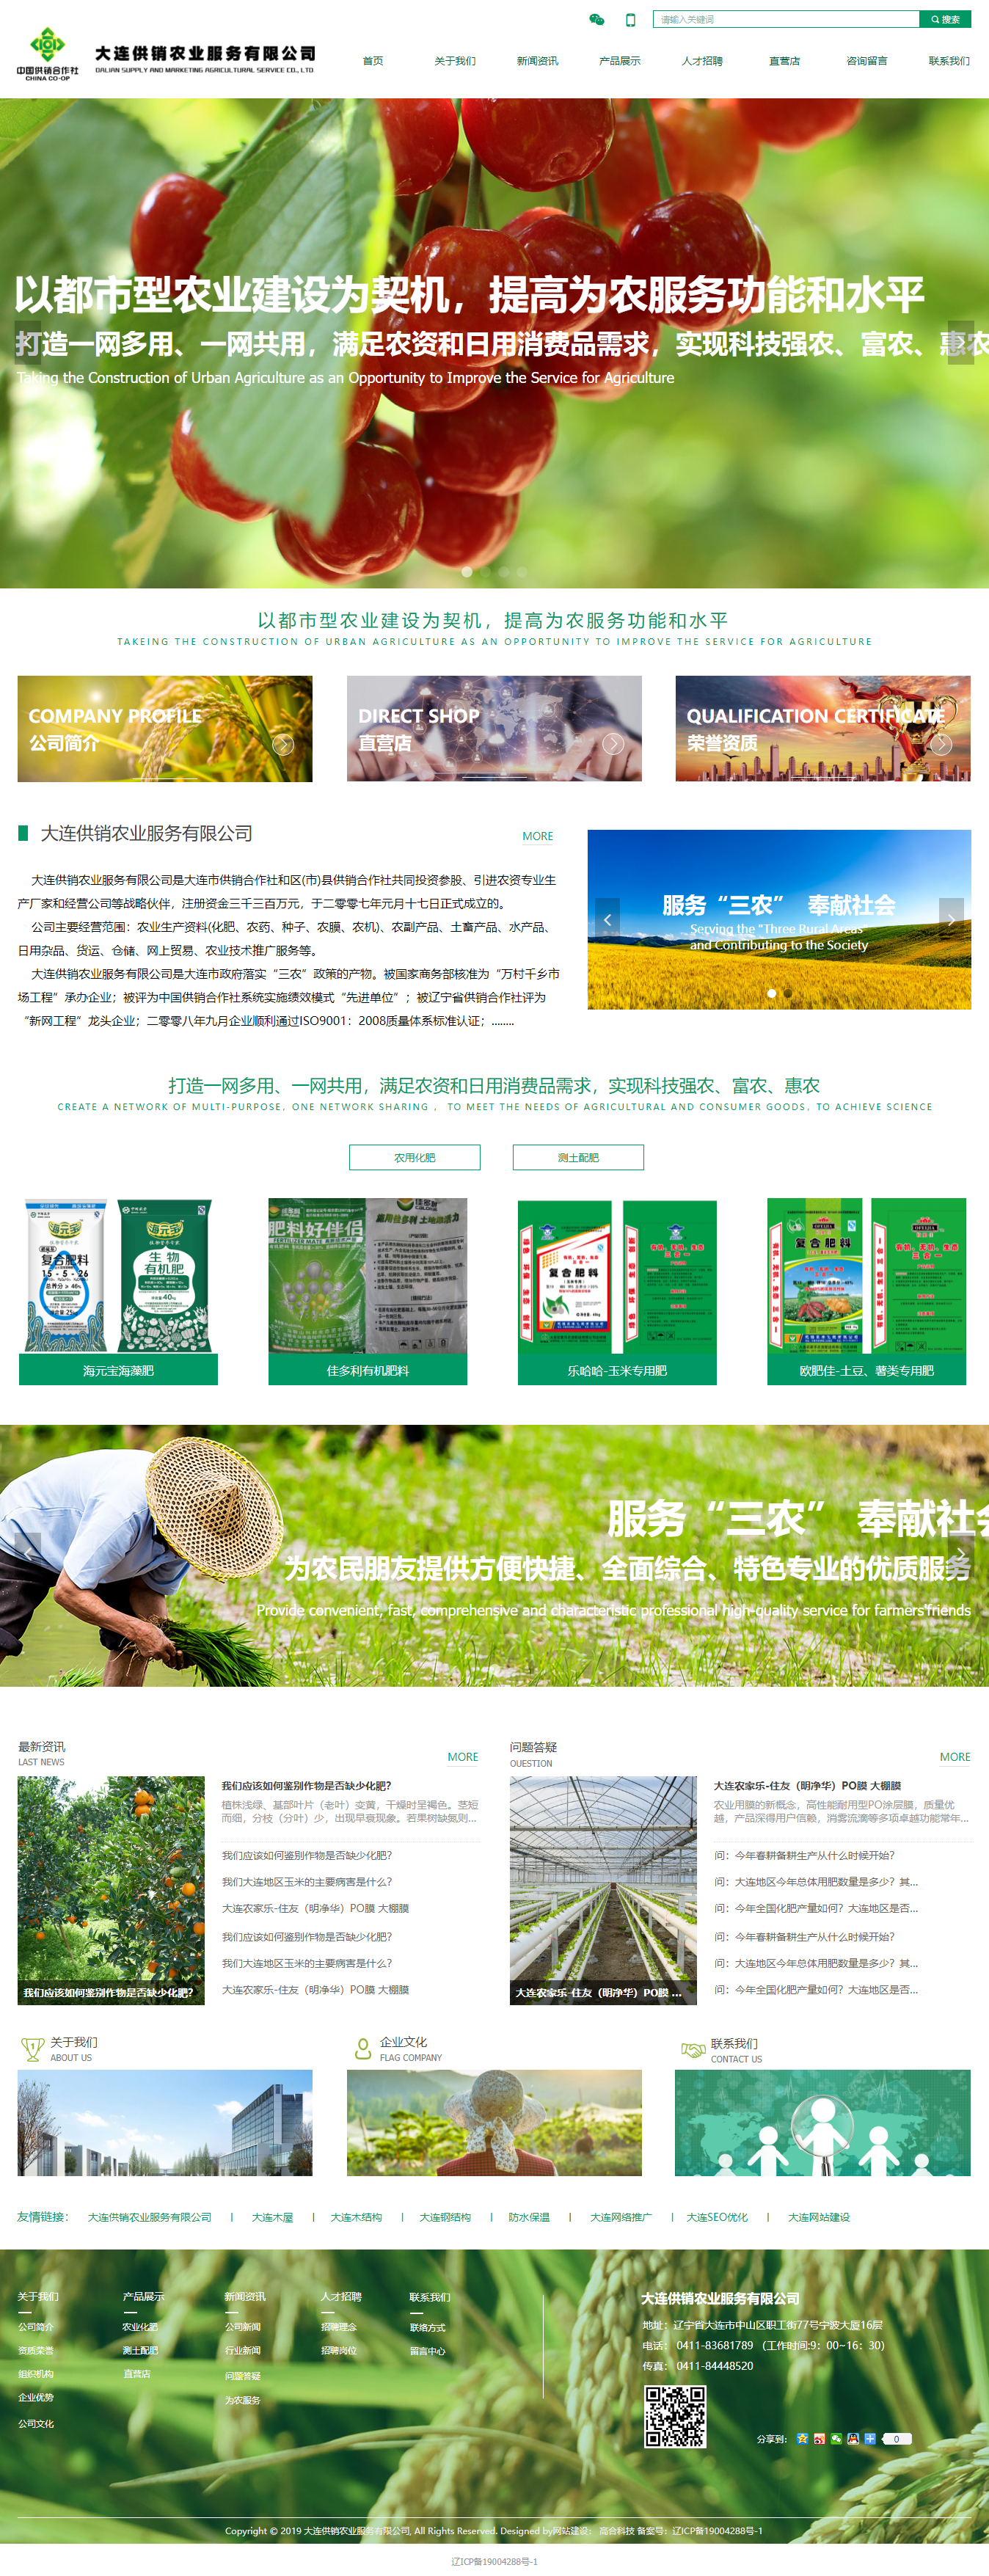 大连供销农业服务有限公司网站案例